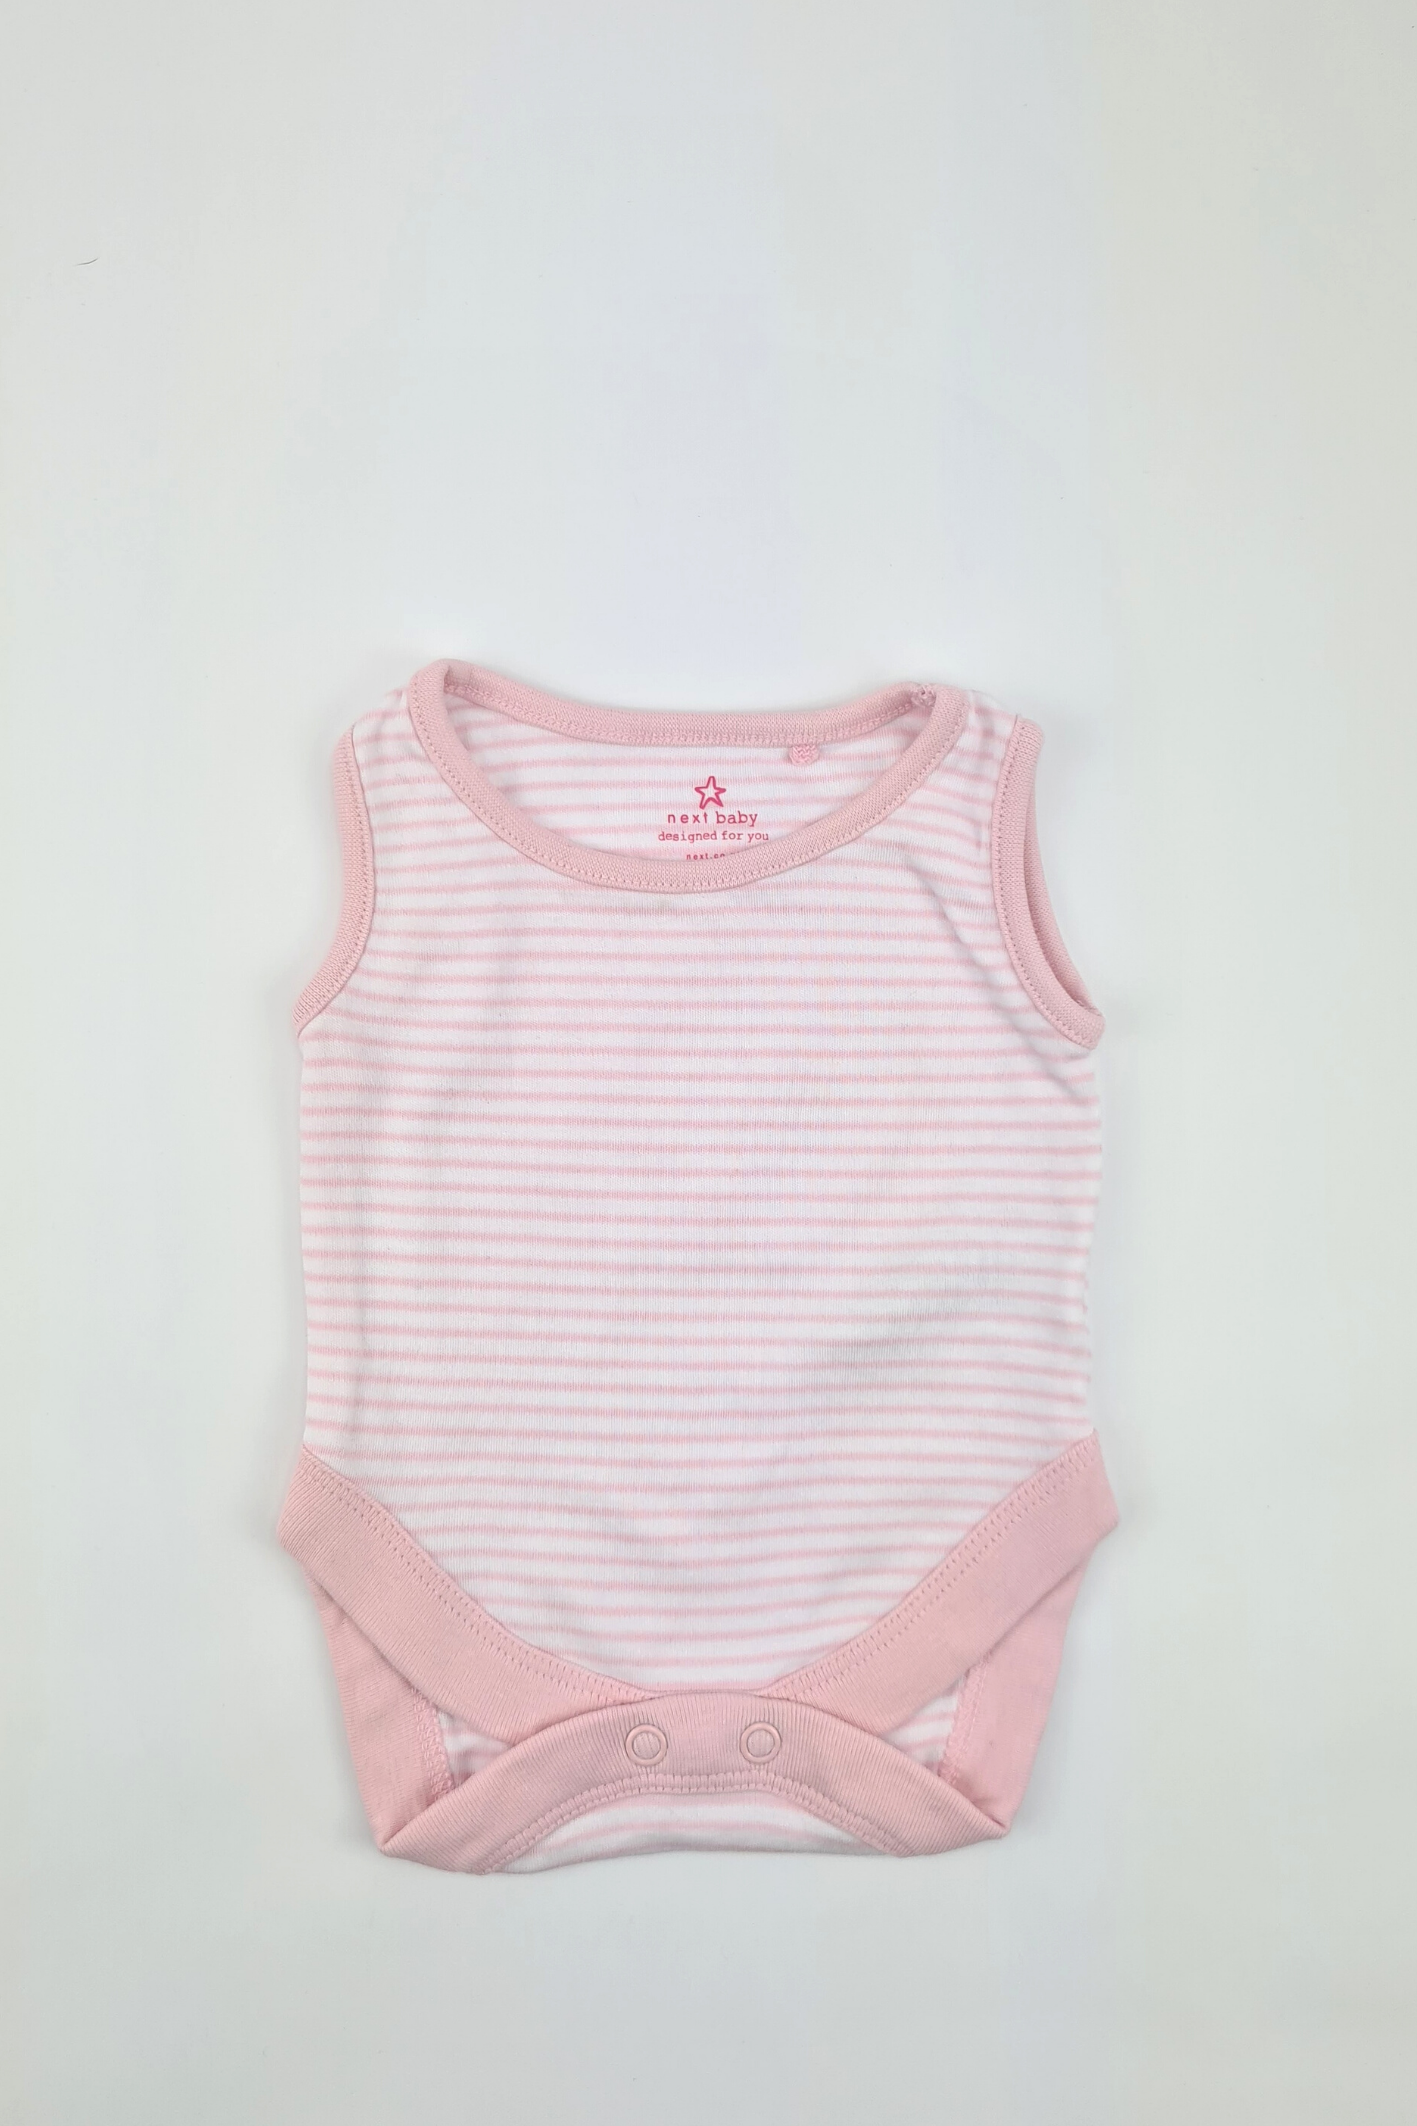 Neugeborene – 10 Pfund rosa gestreifter Kurzarm-Body (Weiter)